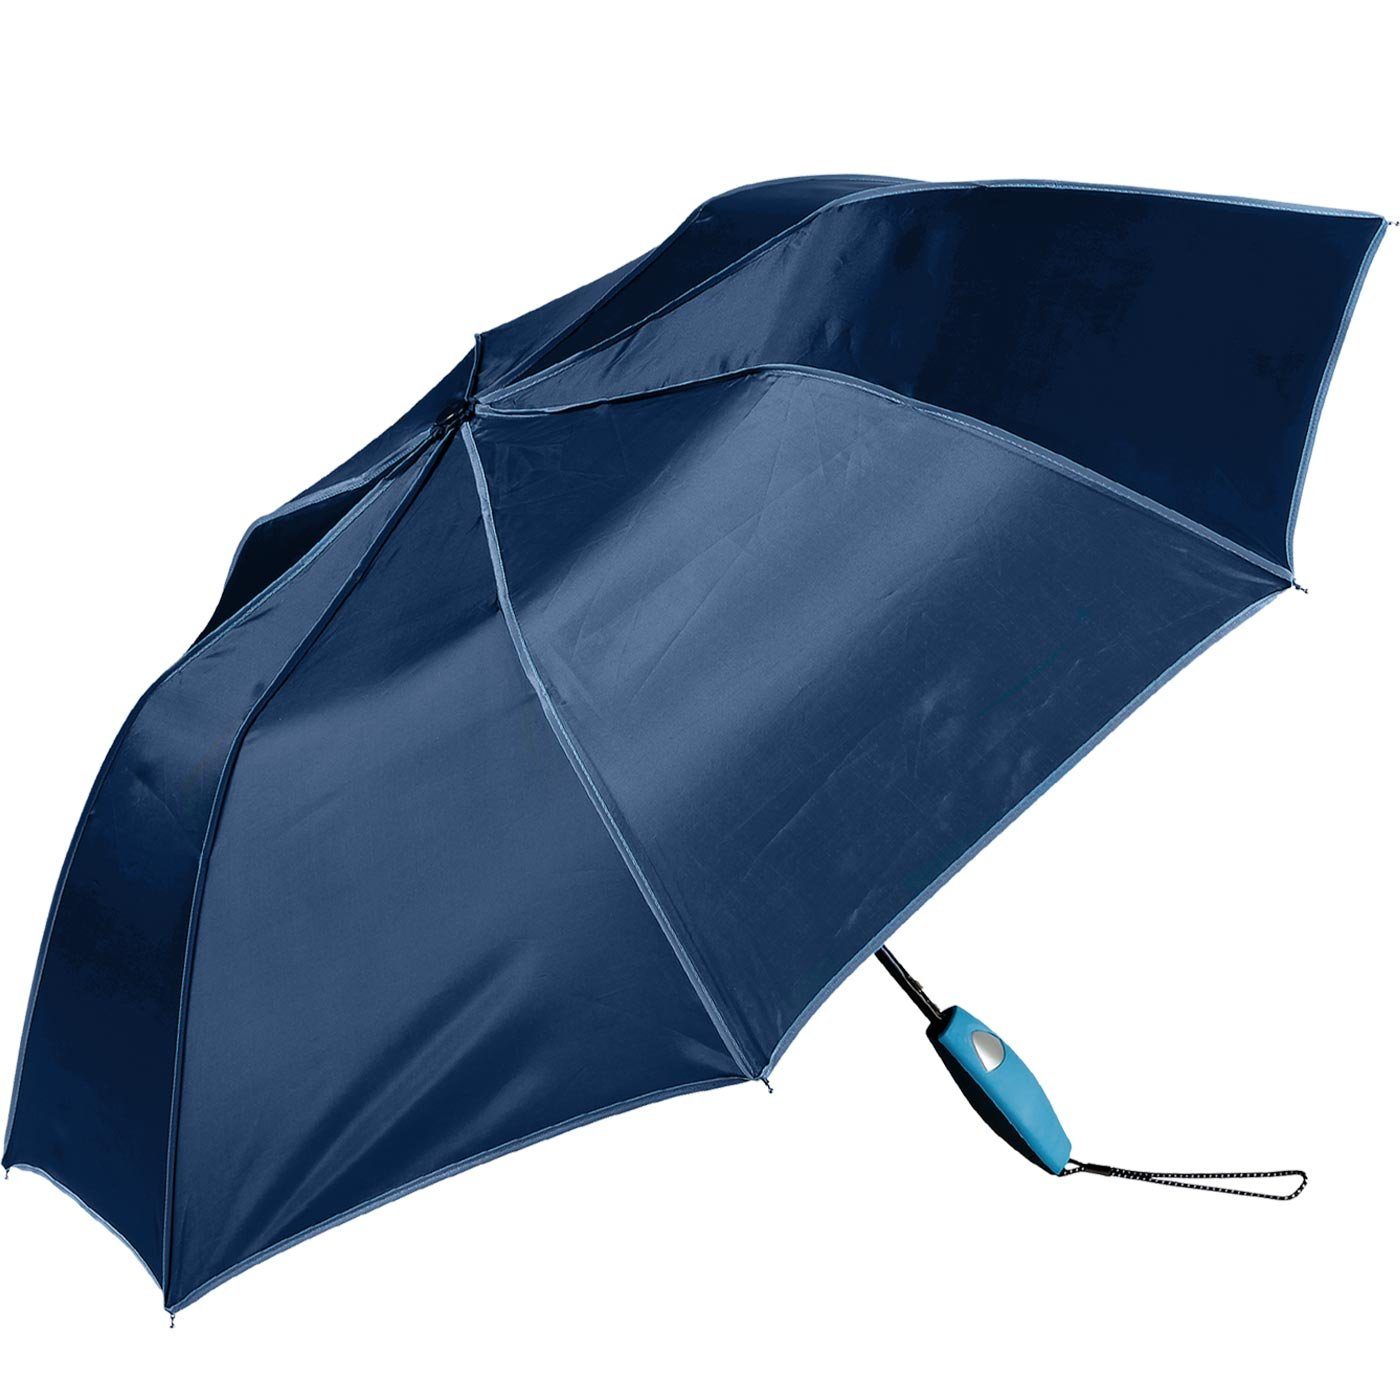 Impliva Taschenregenschirm Falconetti Griff, Auf-Automatik farblich auffallend passender navy-blau